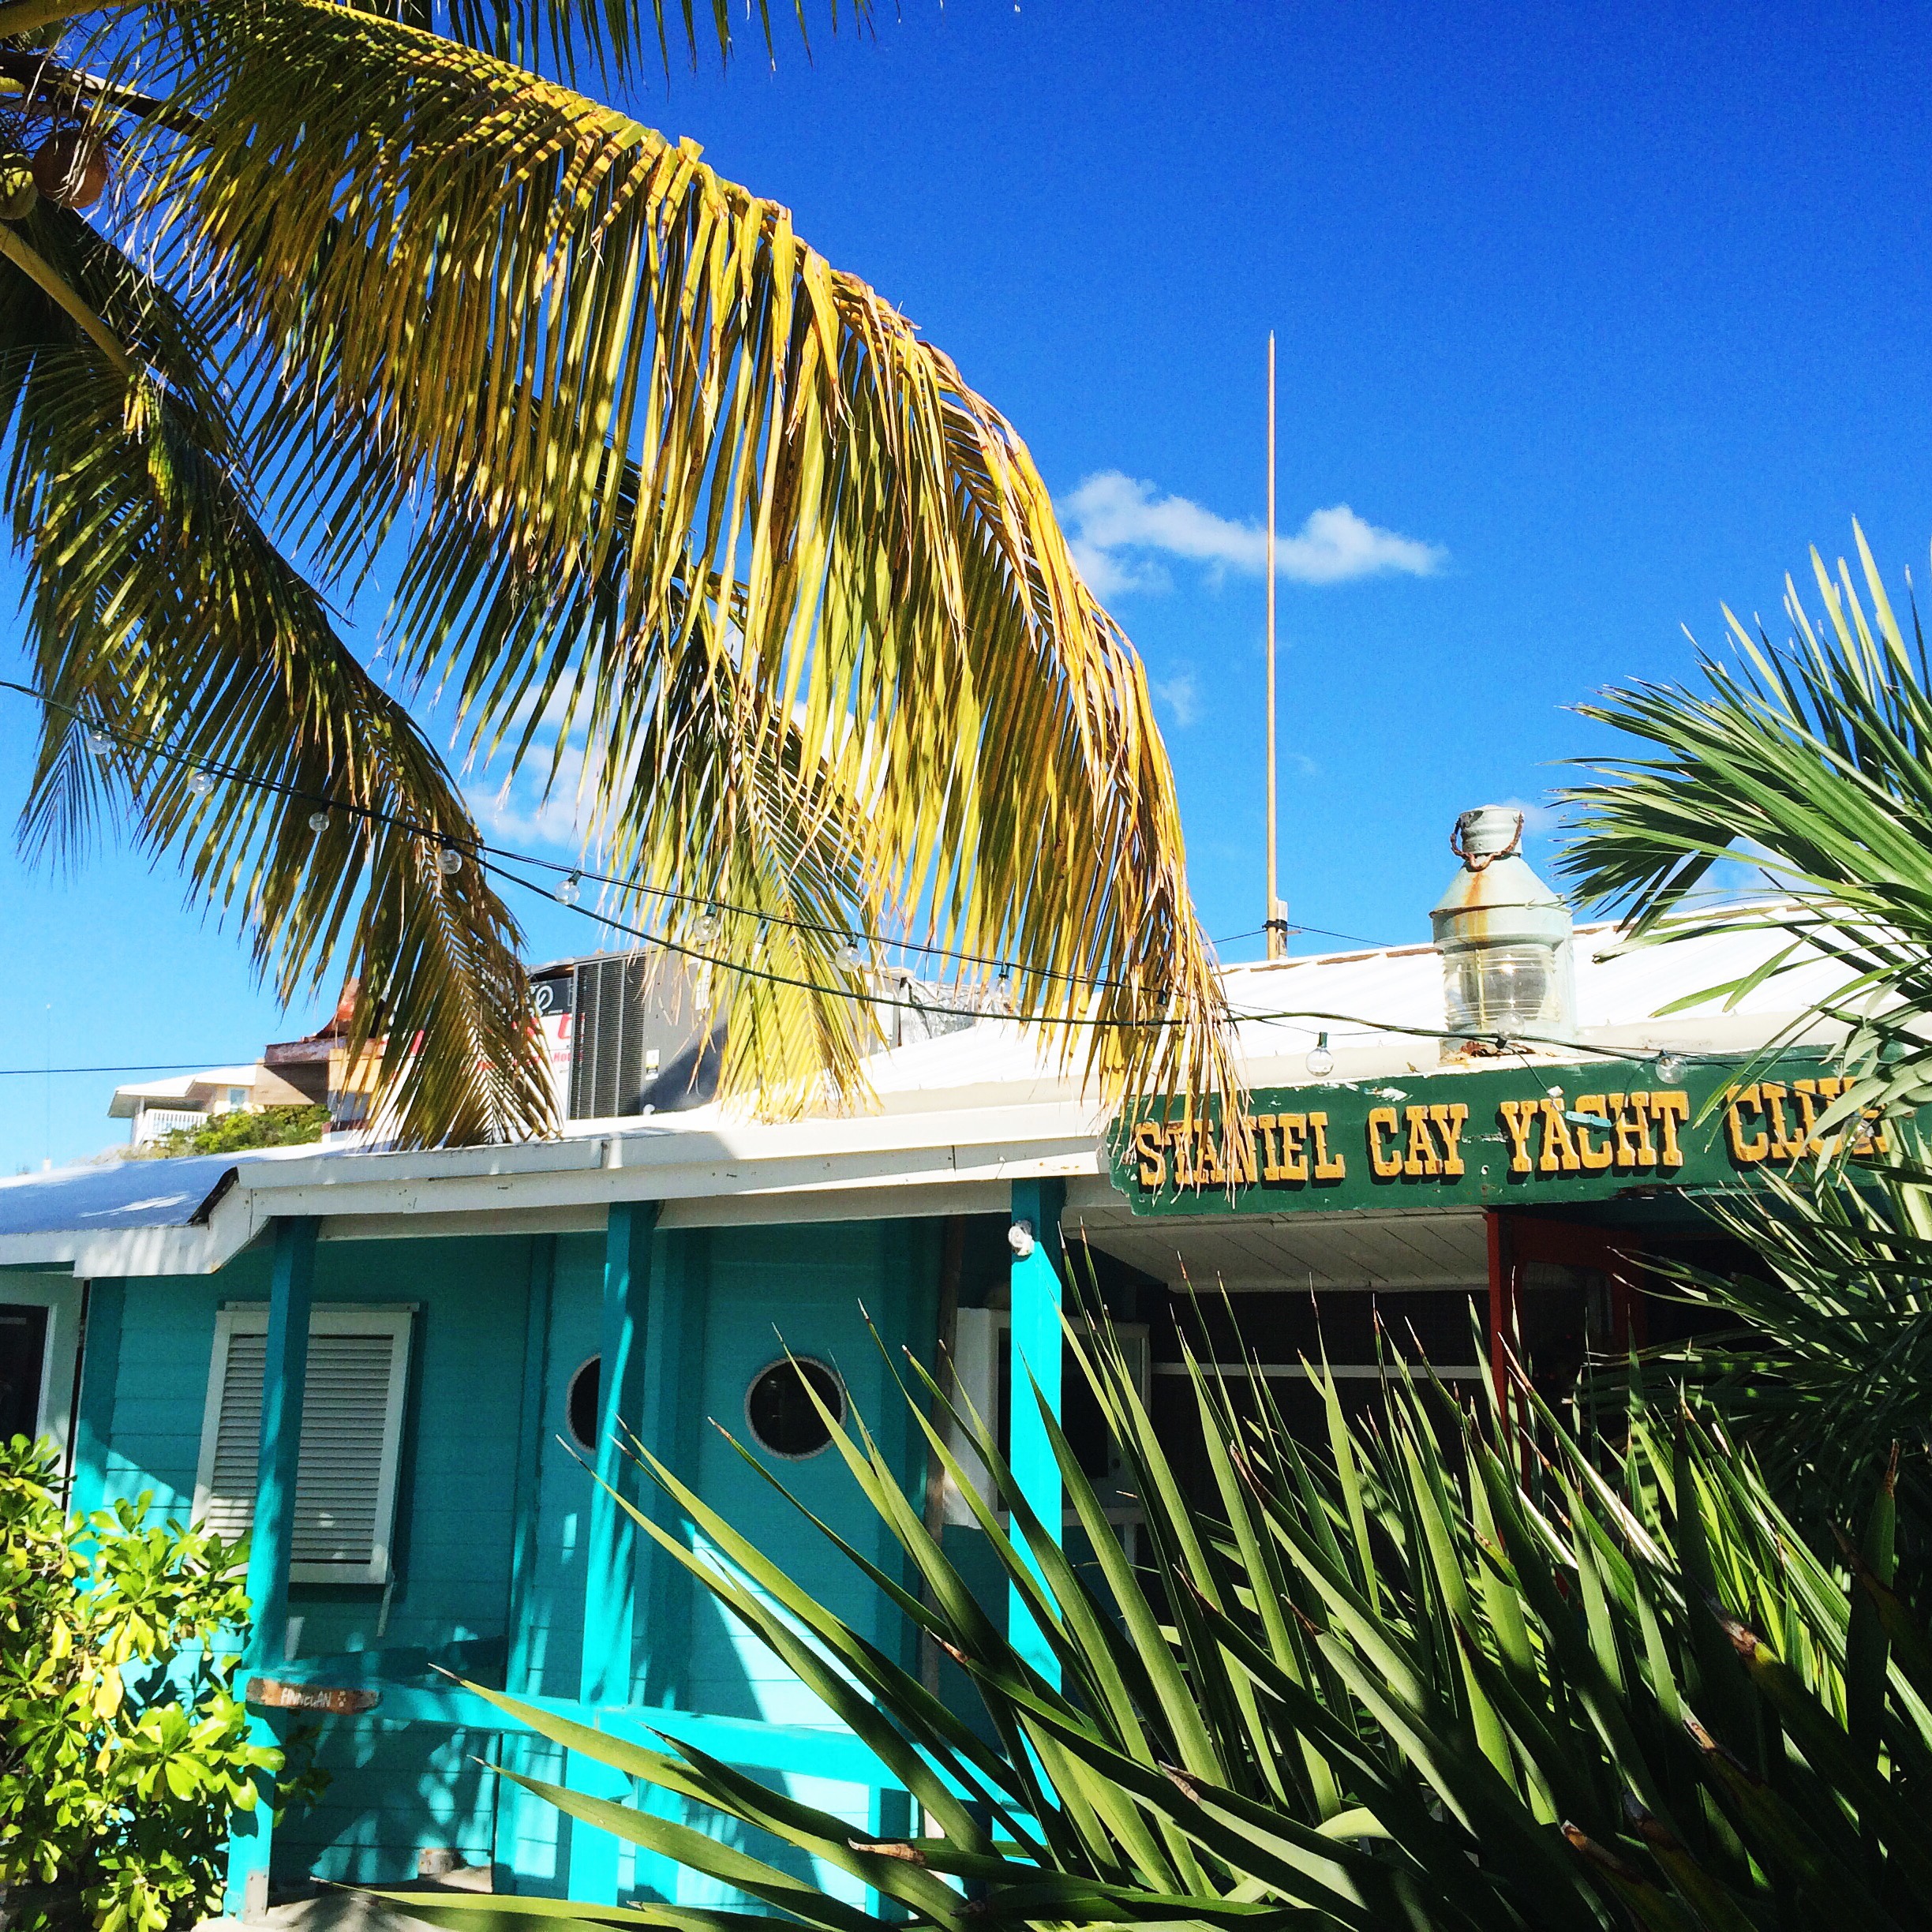 Staniel Cay Yacht Club | Traveling to The Exumas, Bahamas | Guide to Exumas, Bahamas | elanaloo.com